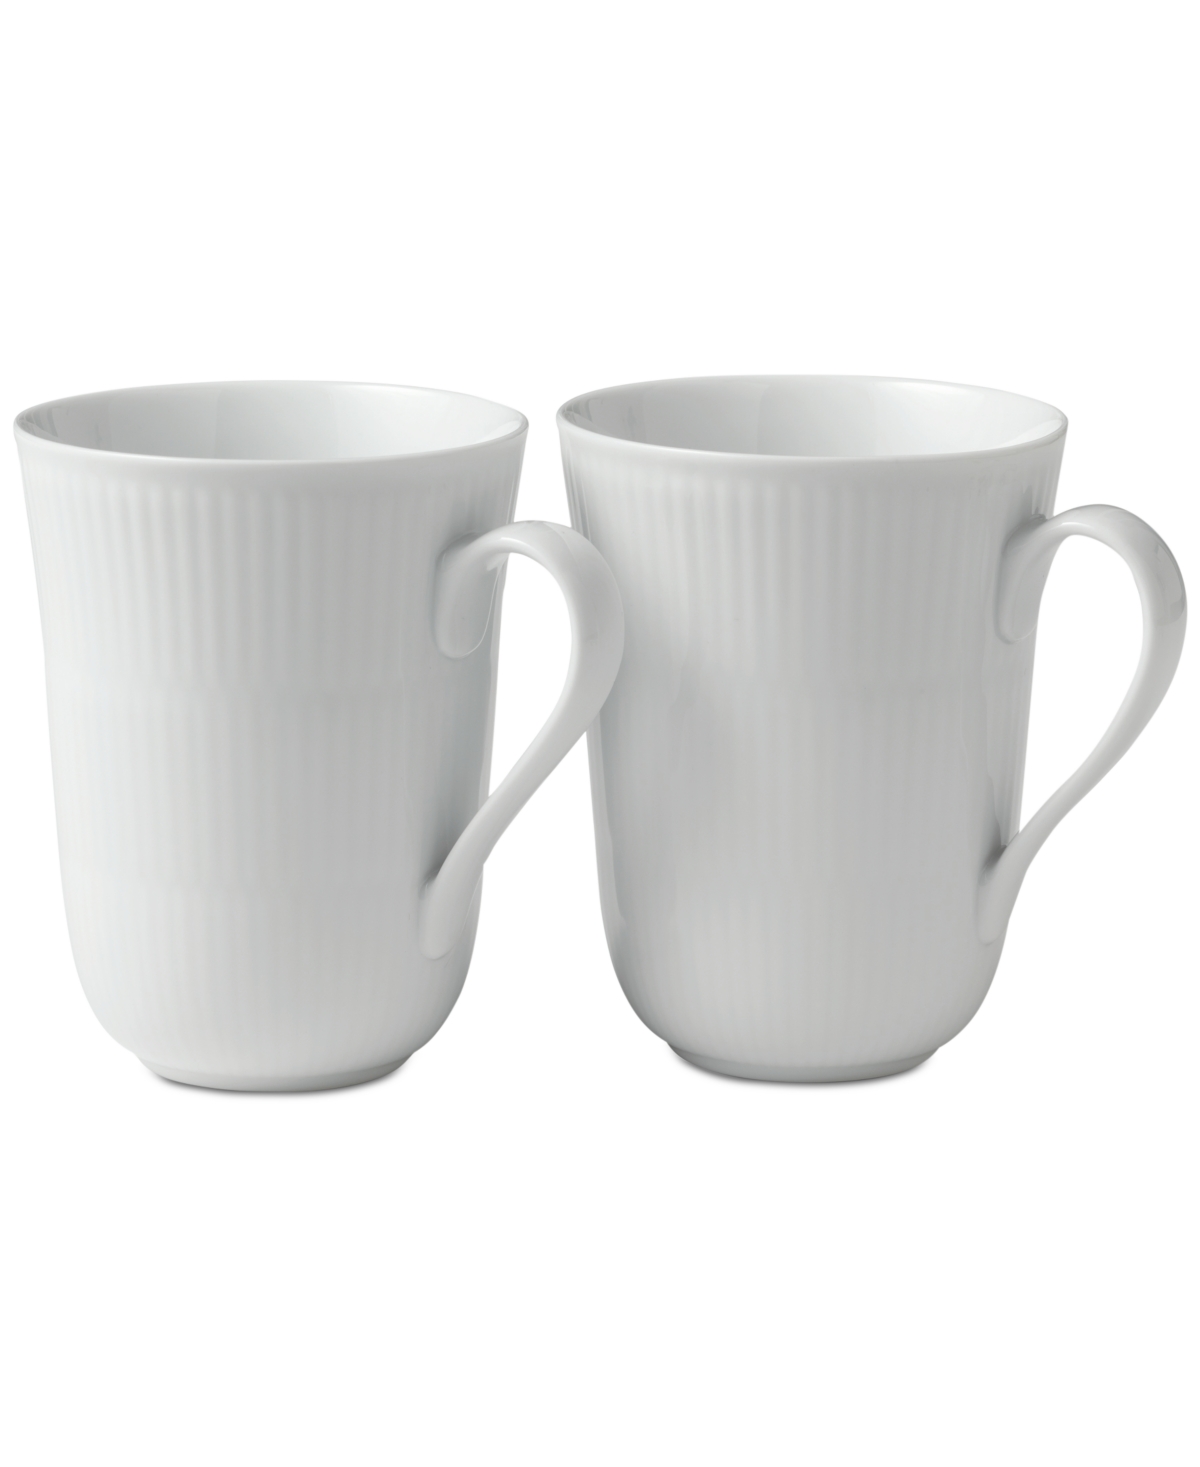 White Fluted Mugs, Set of 2 - White